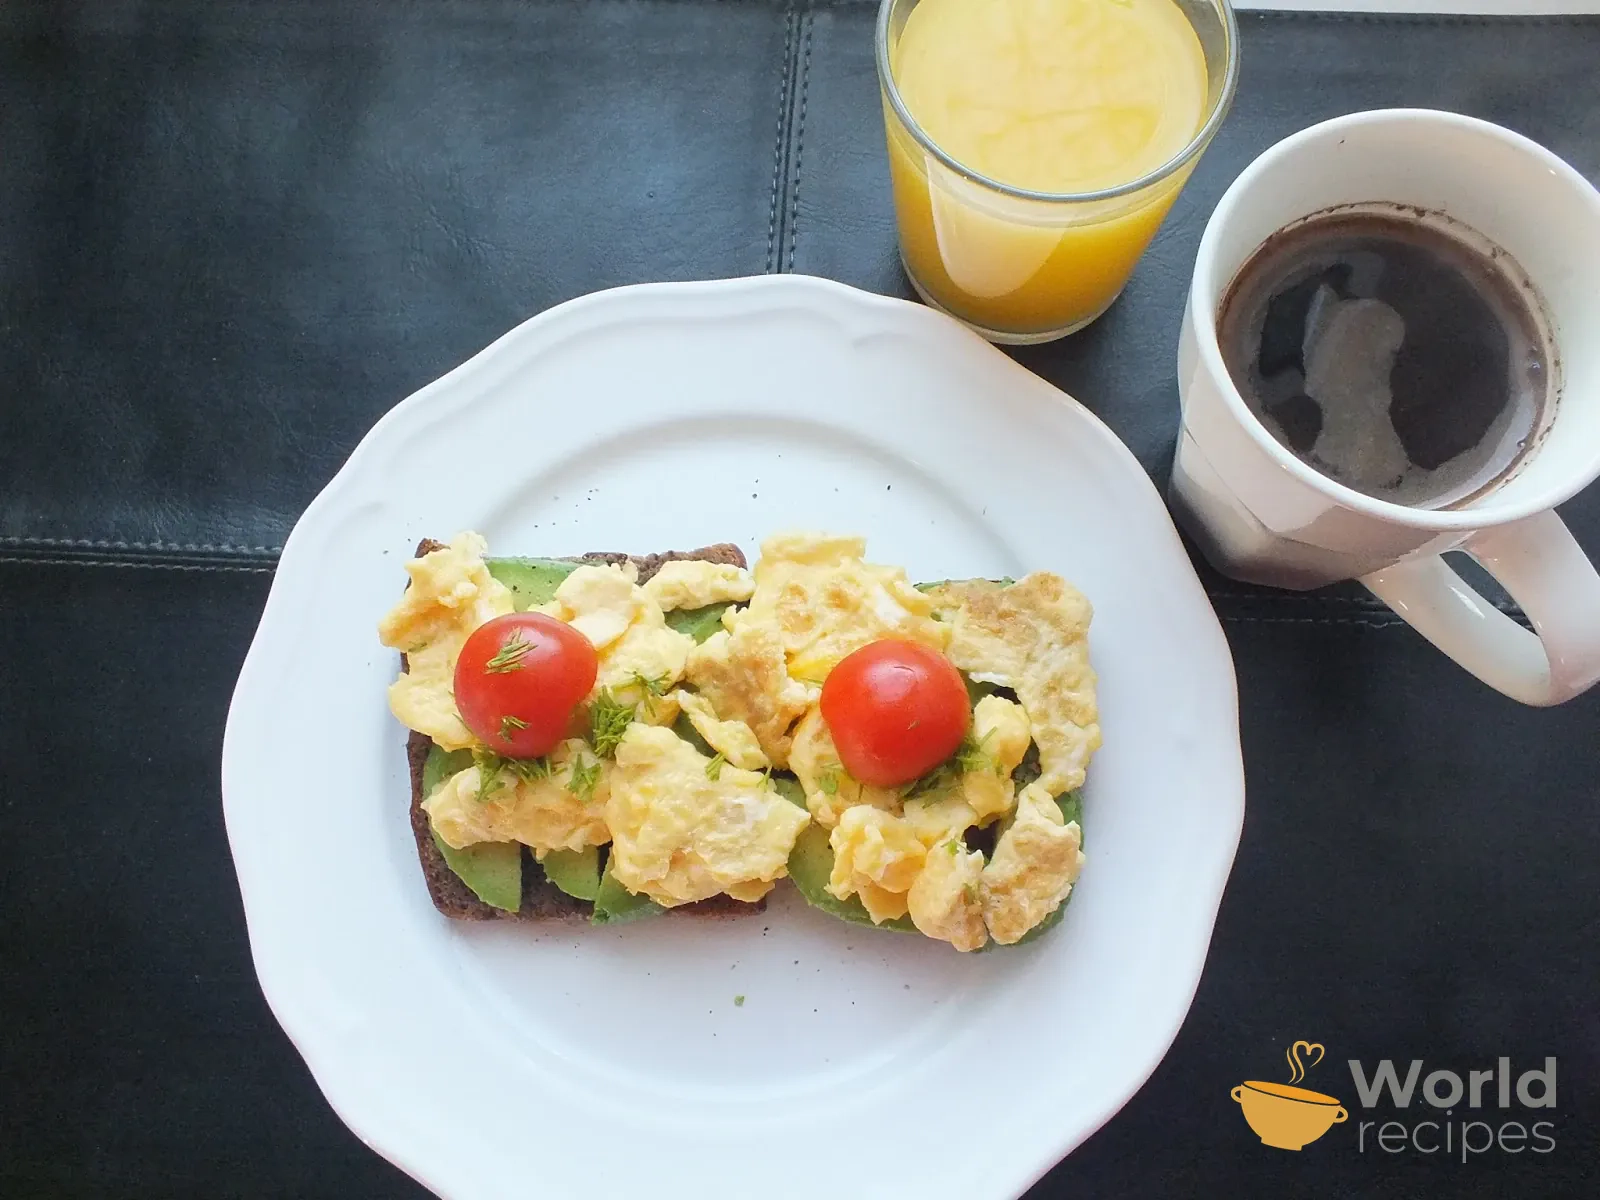 Pusryčių skrebučiai - sumuštiniai su grūdėta duona, avokadu ir plaktu kiaušiniu